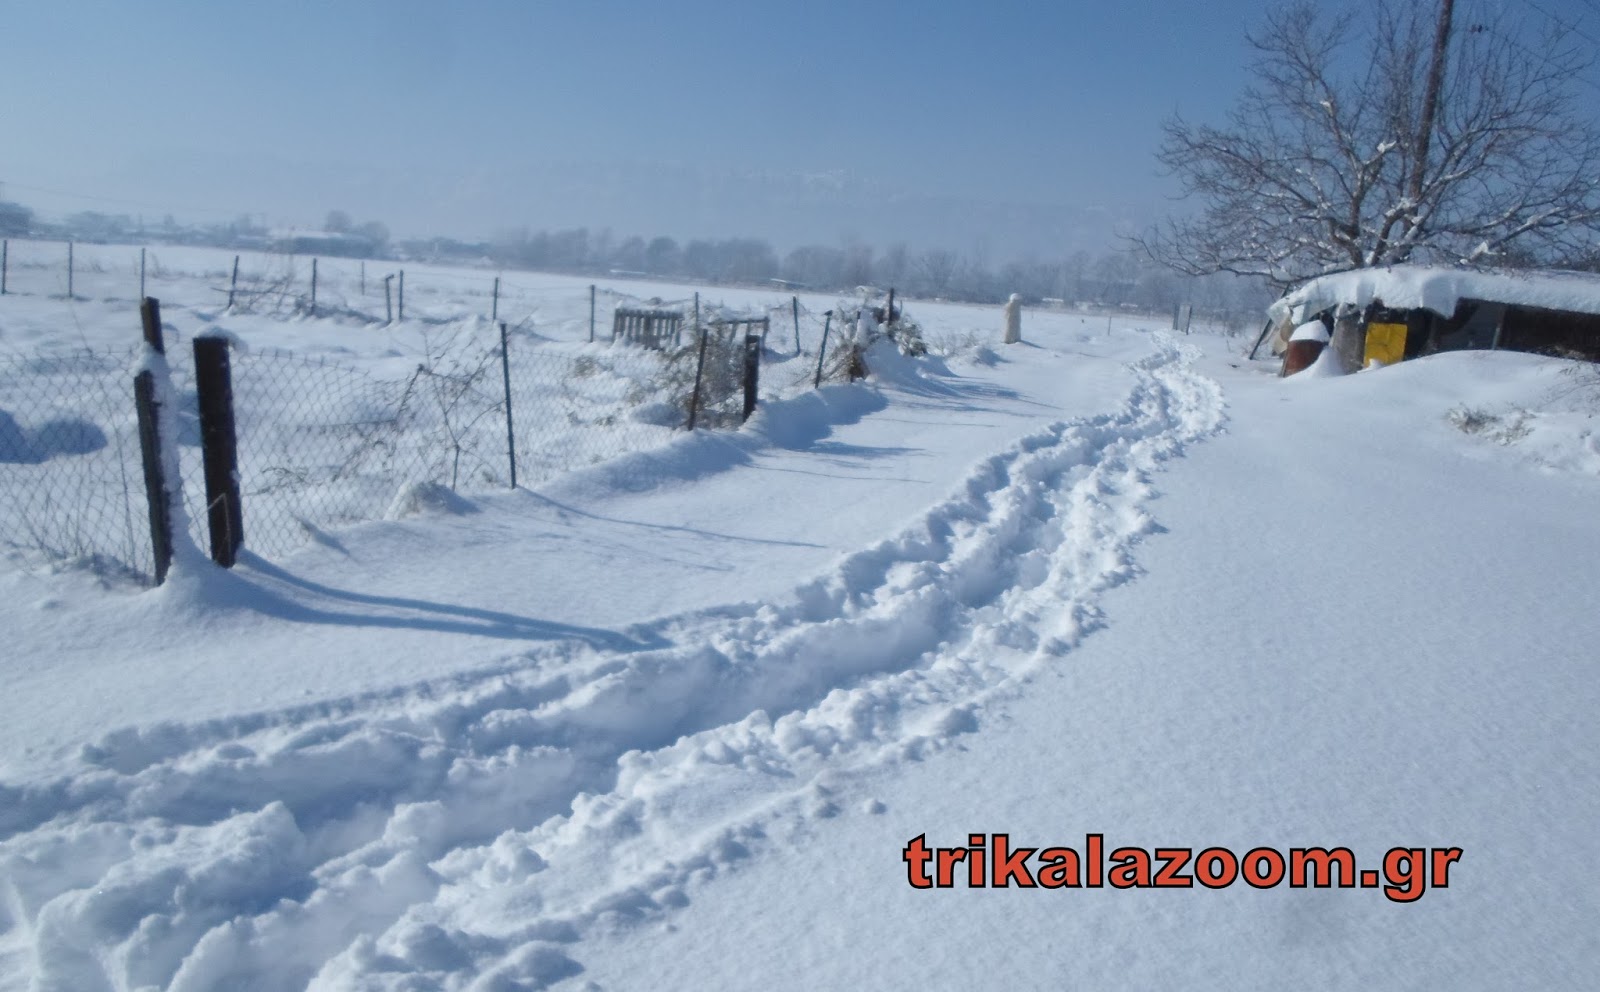 Σκληρή μάχη στα χιόνια δίνουν οι κάτοικοι της Λεπτοκαρυάς Τρικάλων να ταΐσουν τα ζωντανά τους - Φωτογραφία 1